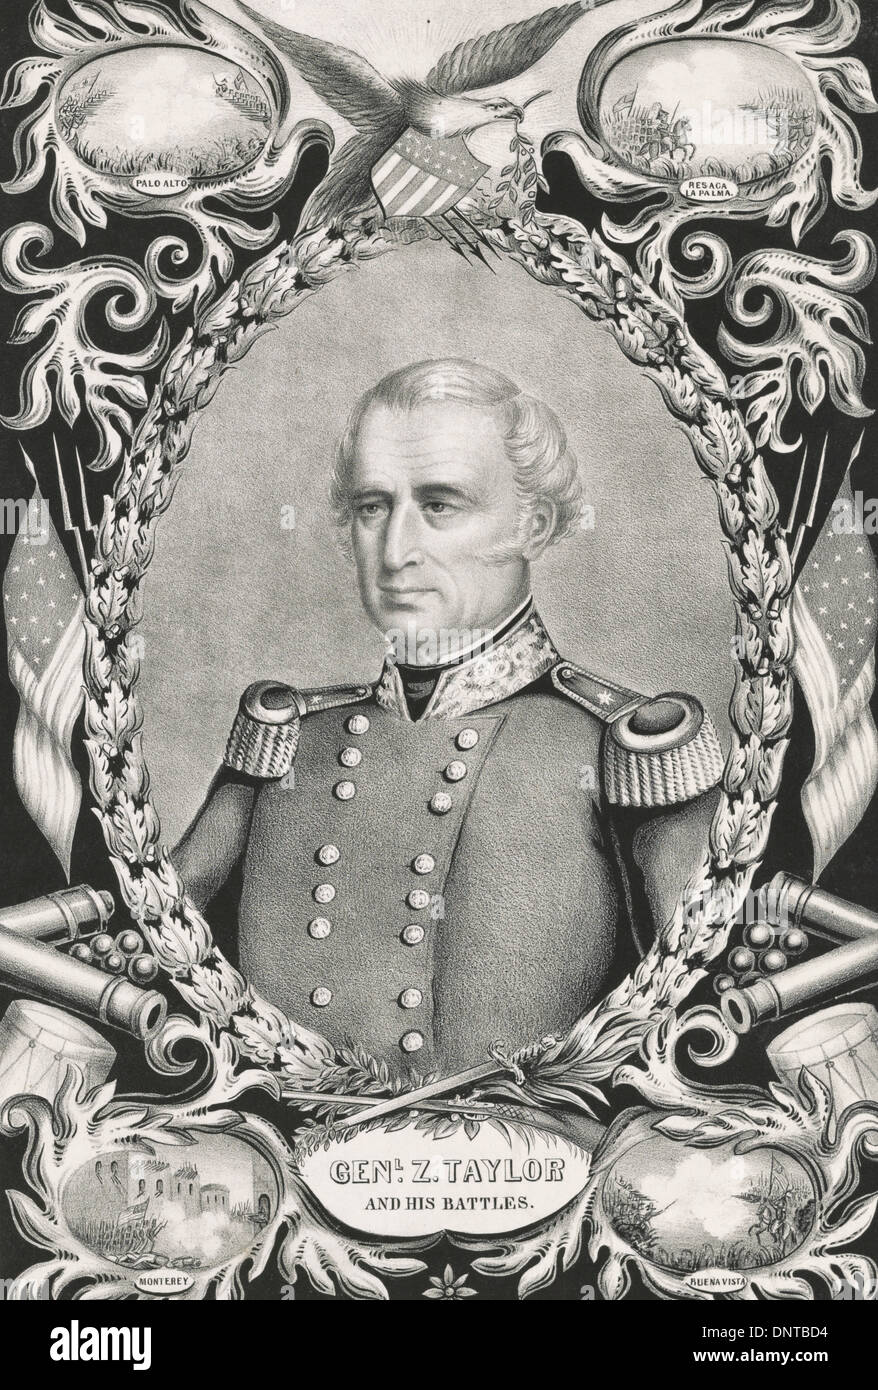 Der Nation die richtige Wahl für die 12. Präsident der US-General Zachary Taylor und seine Schlachten, 1848 Stockfoto